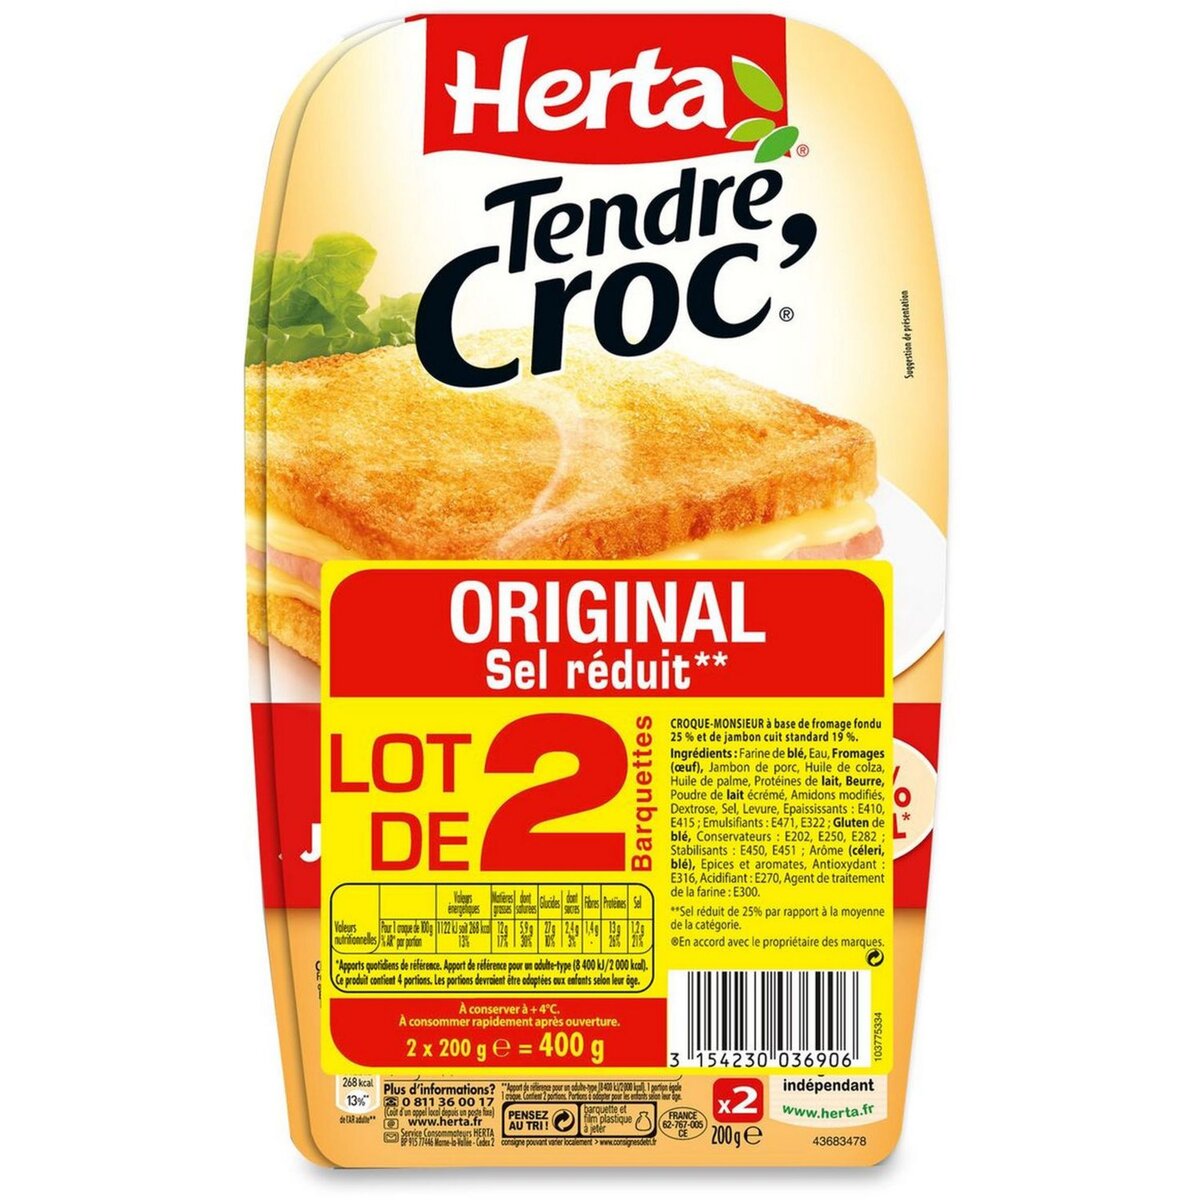 HERTA Herta Tendre Croc' Croque-monsieur fromage jambon sel réduit lot de 2 400g